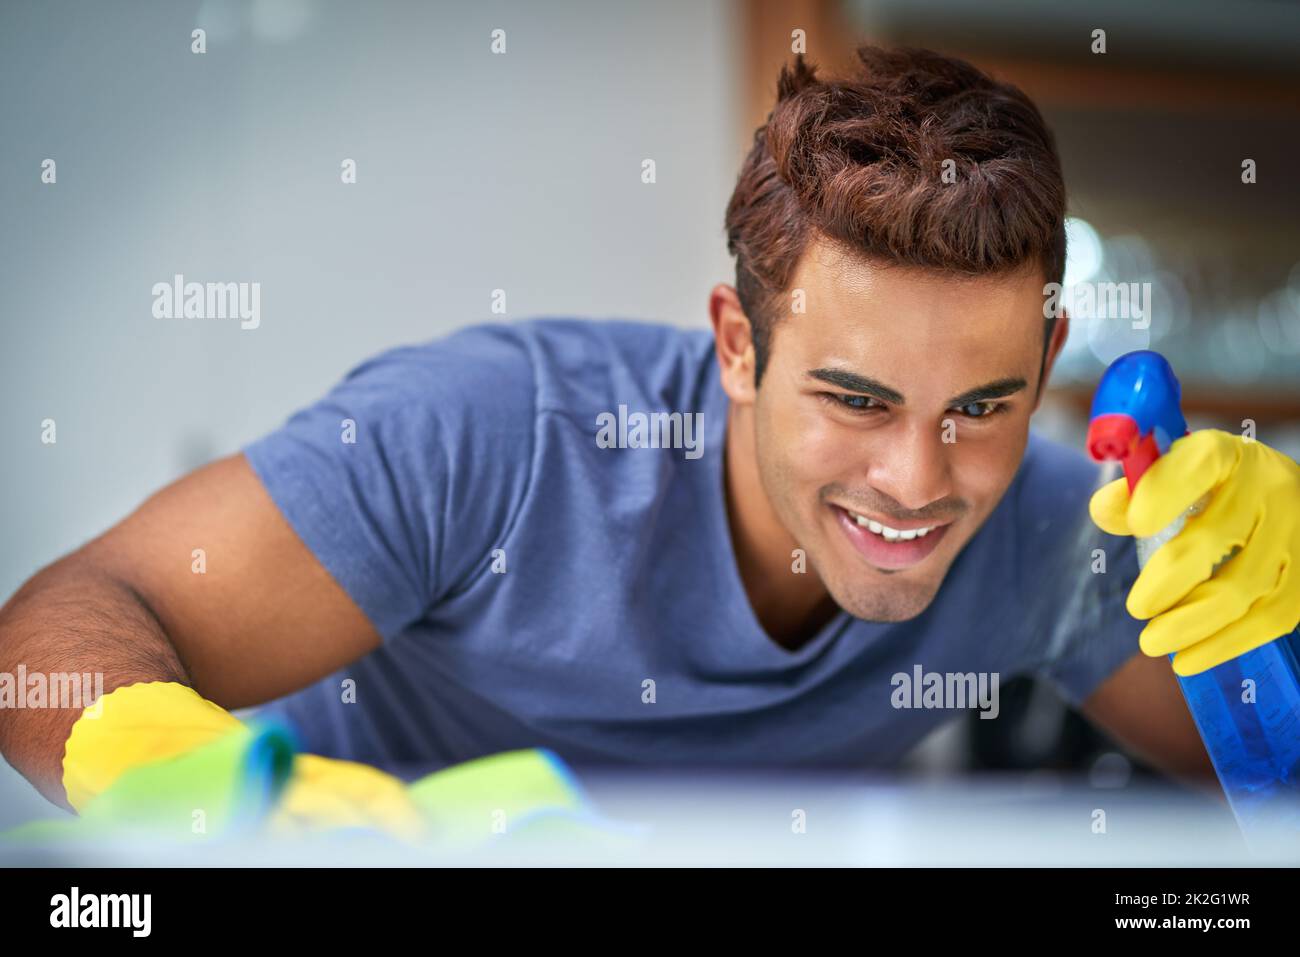 Eifrig zu reinigen. Aufnahme eines jungen Mannes, der Hausaufgaben macht. Stockfoto